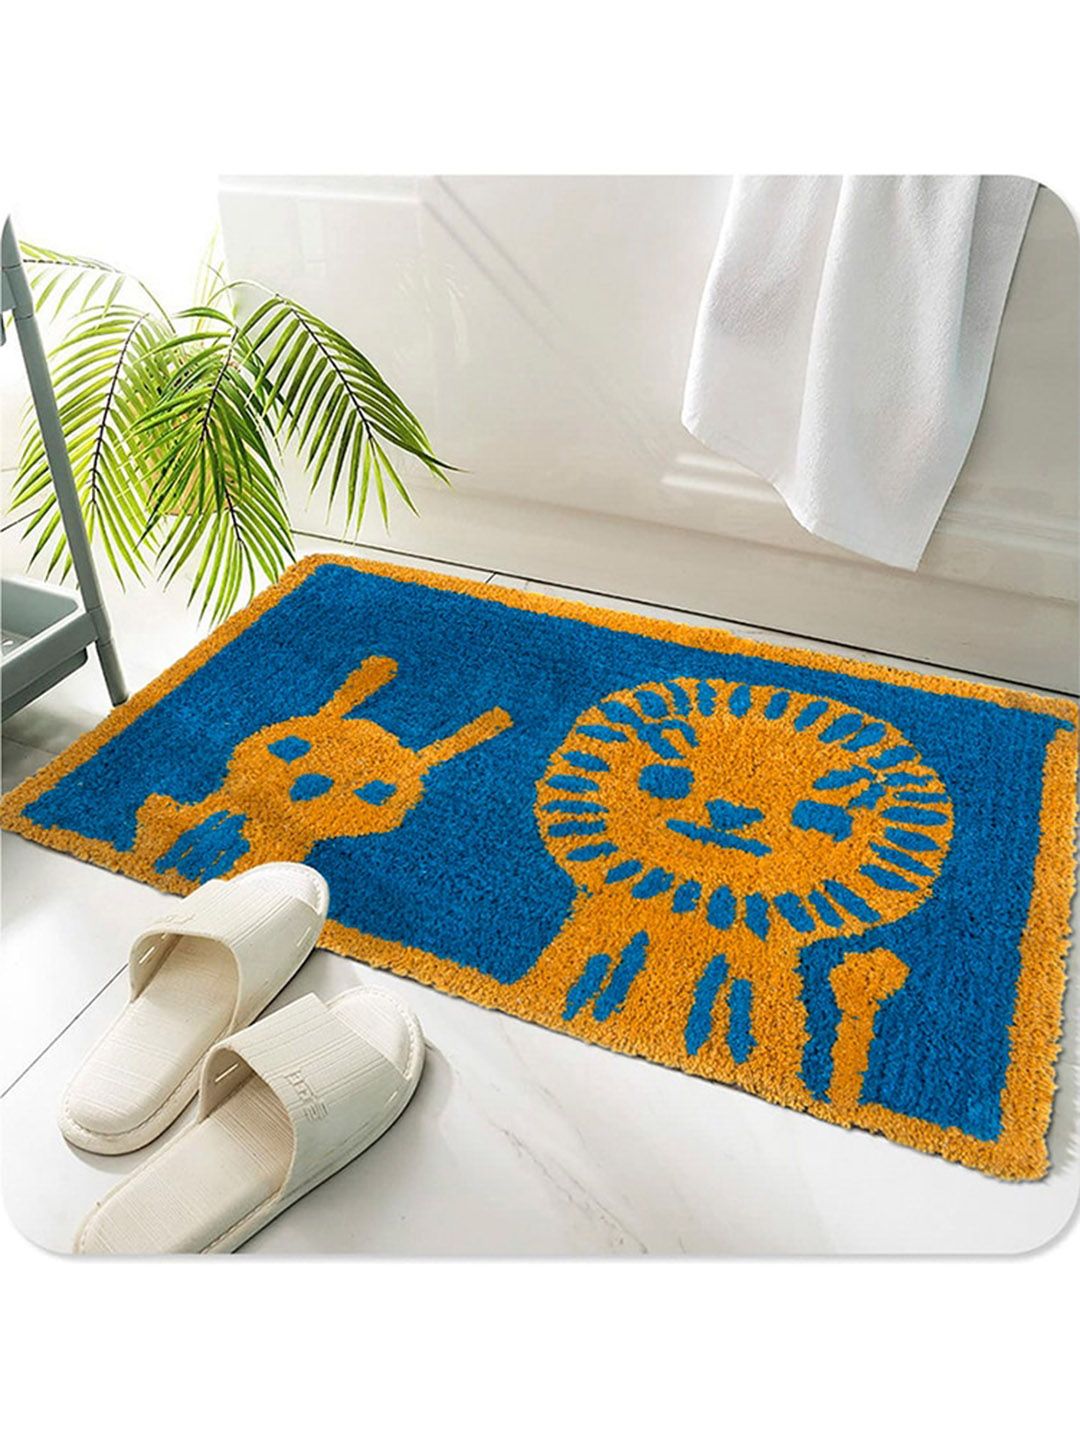 AAZEEM Orange & Blue Printed Cotton Anti-Skid Doormat Price in India